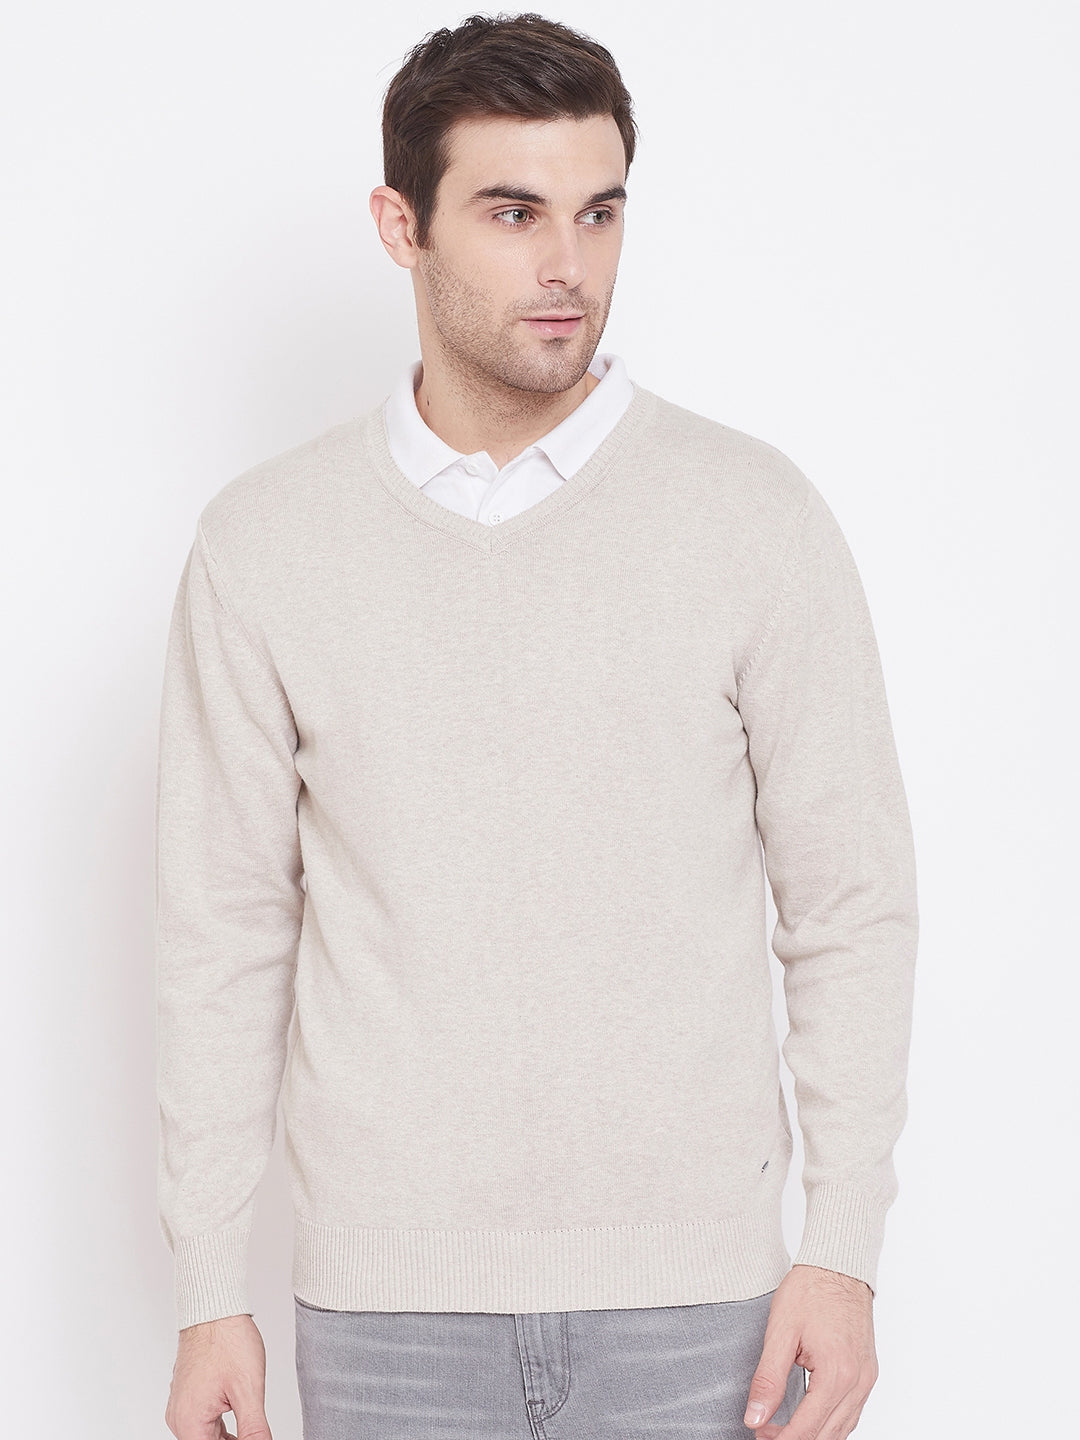 Beige V-Neck Sweater - Men Sweaters